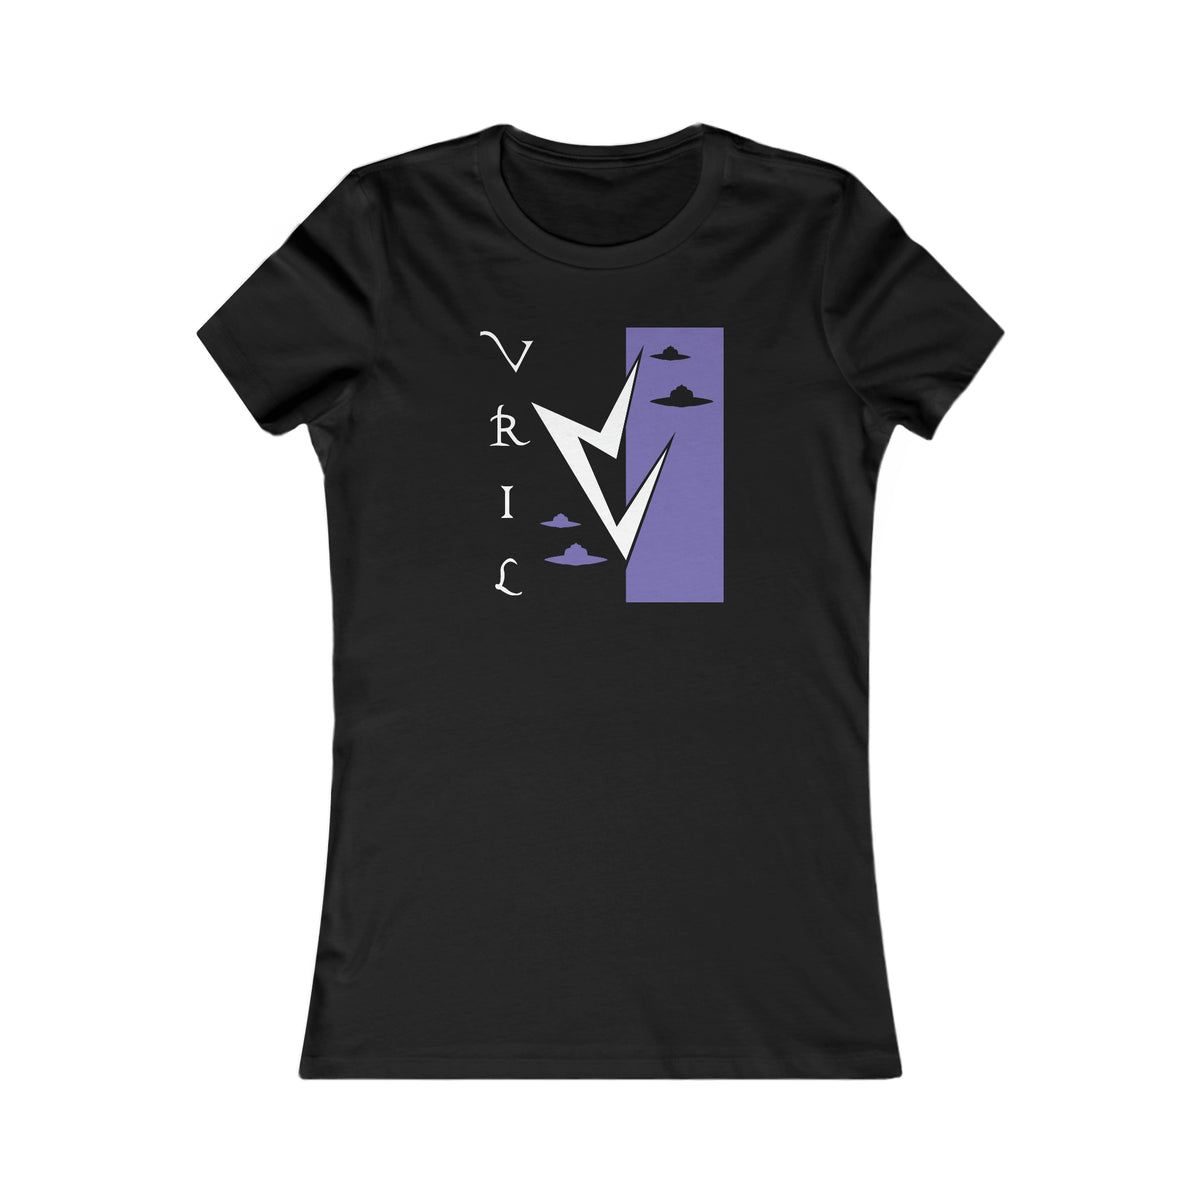 Vril - Die Reise - Damen T Shirt